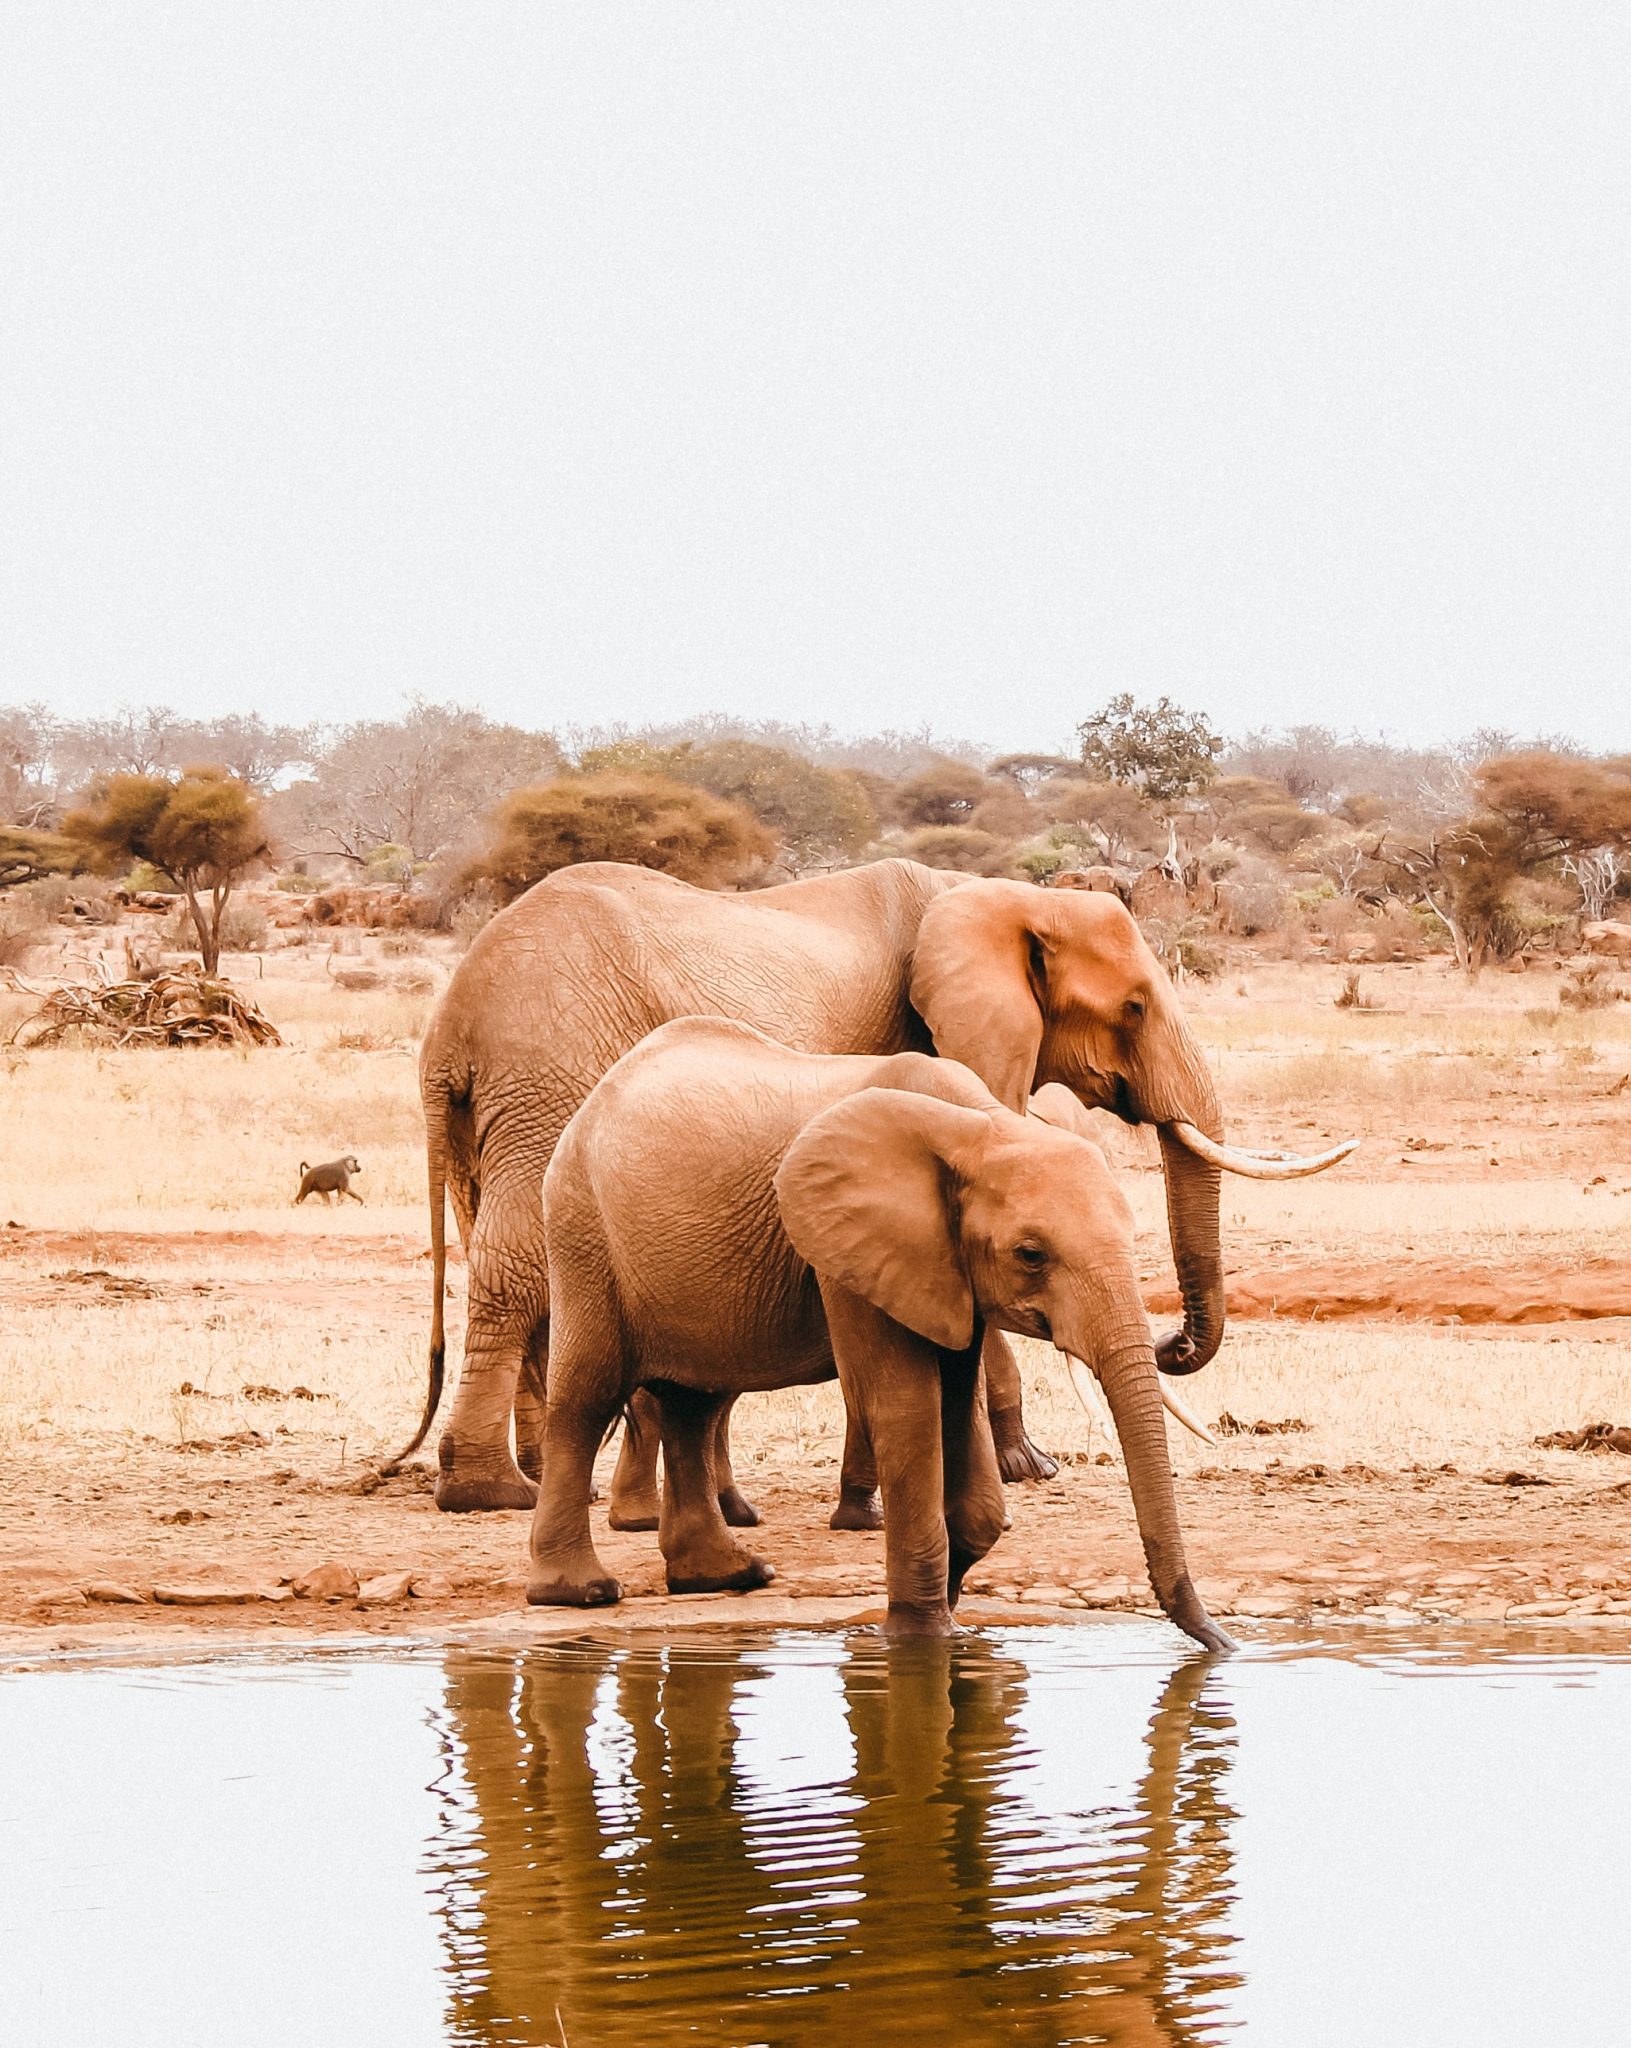 Elephants drinking water from a watering hole in Kenya